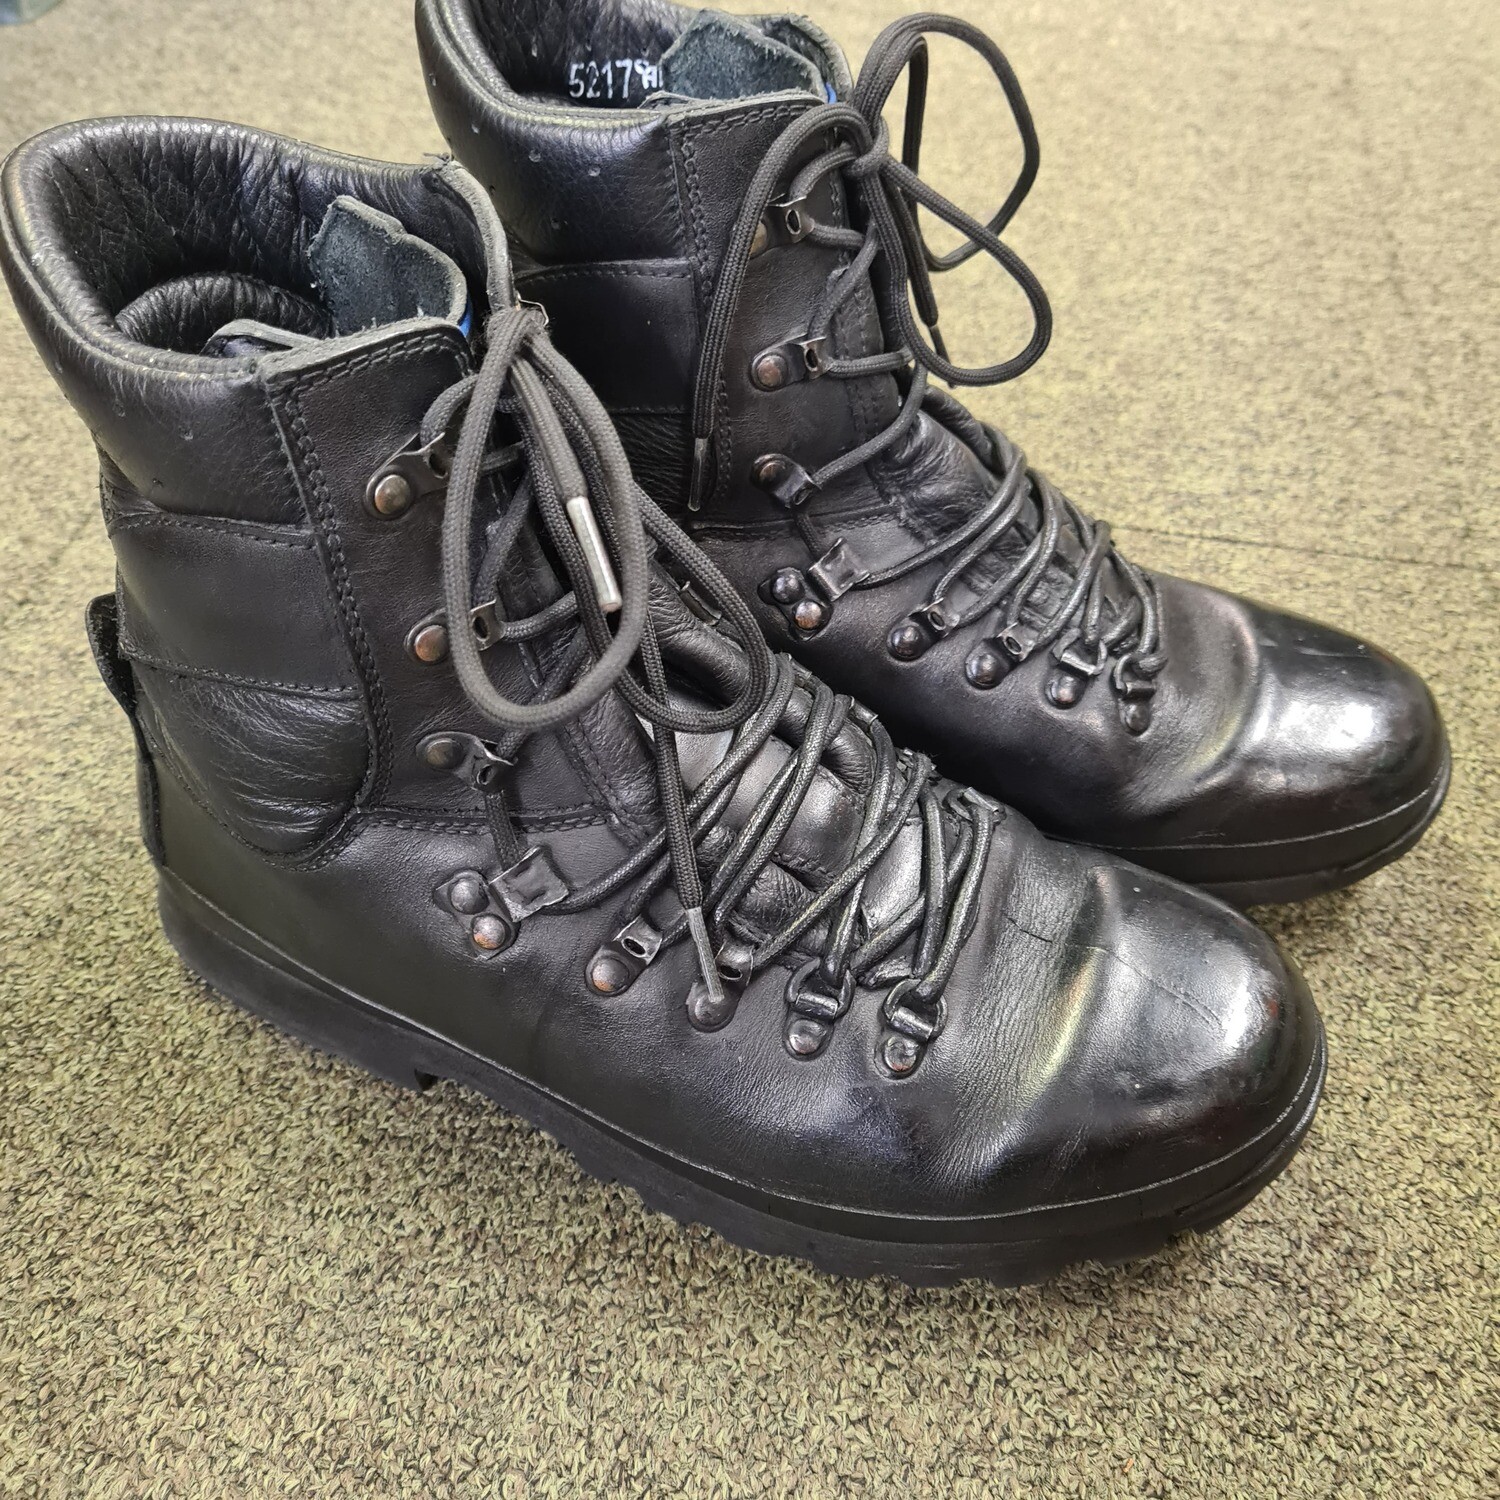 Altberg Defender Black Boots, Size: 11M